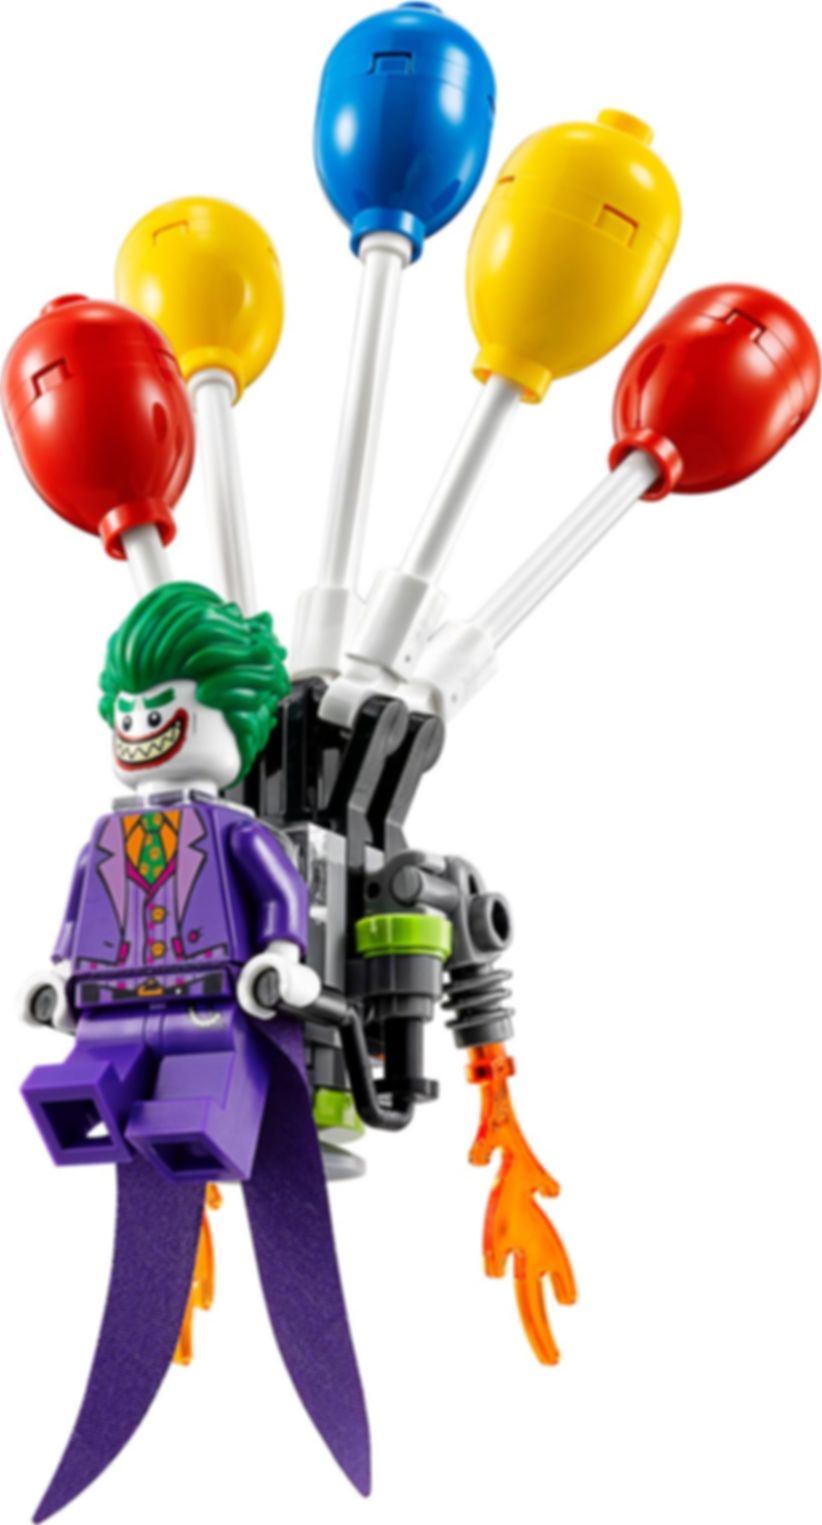 LEGO® Batman Movie Jokers Flucht mit den Ballons komponenten